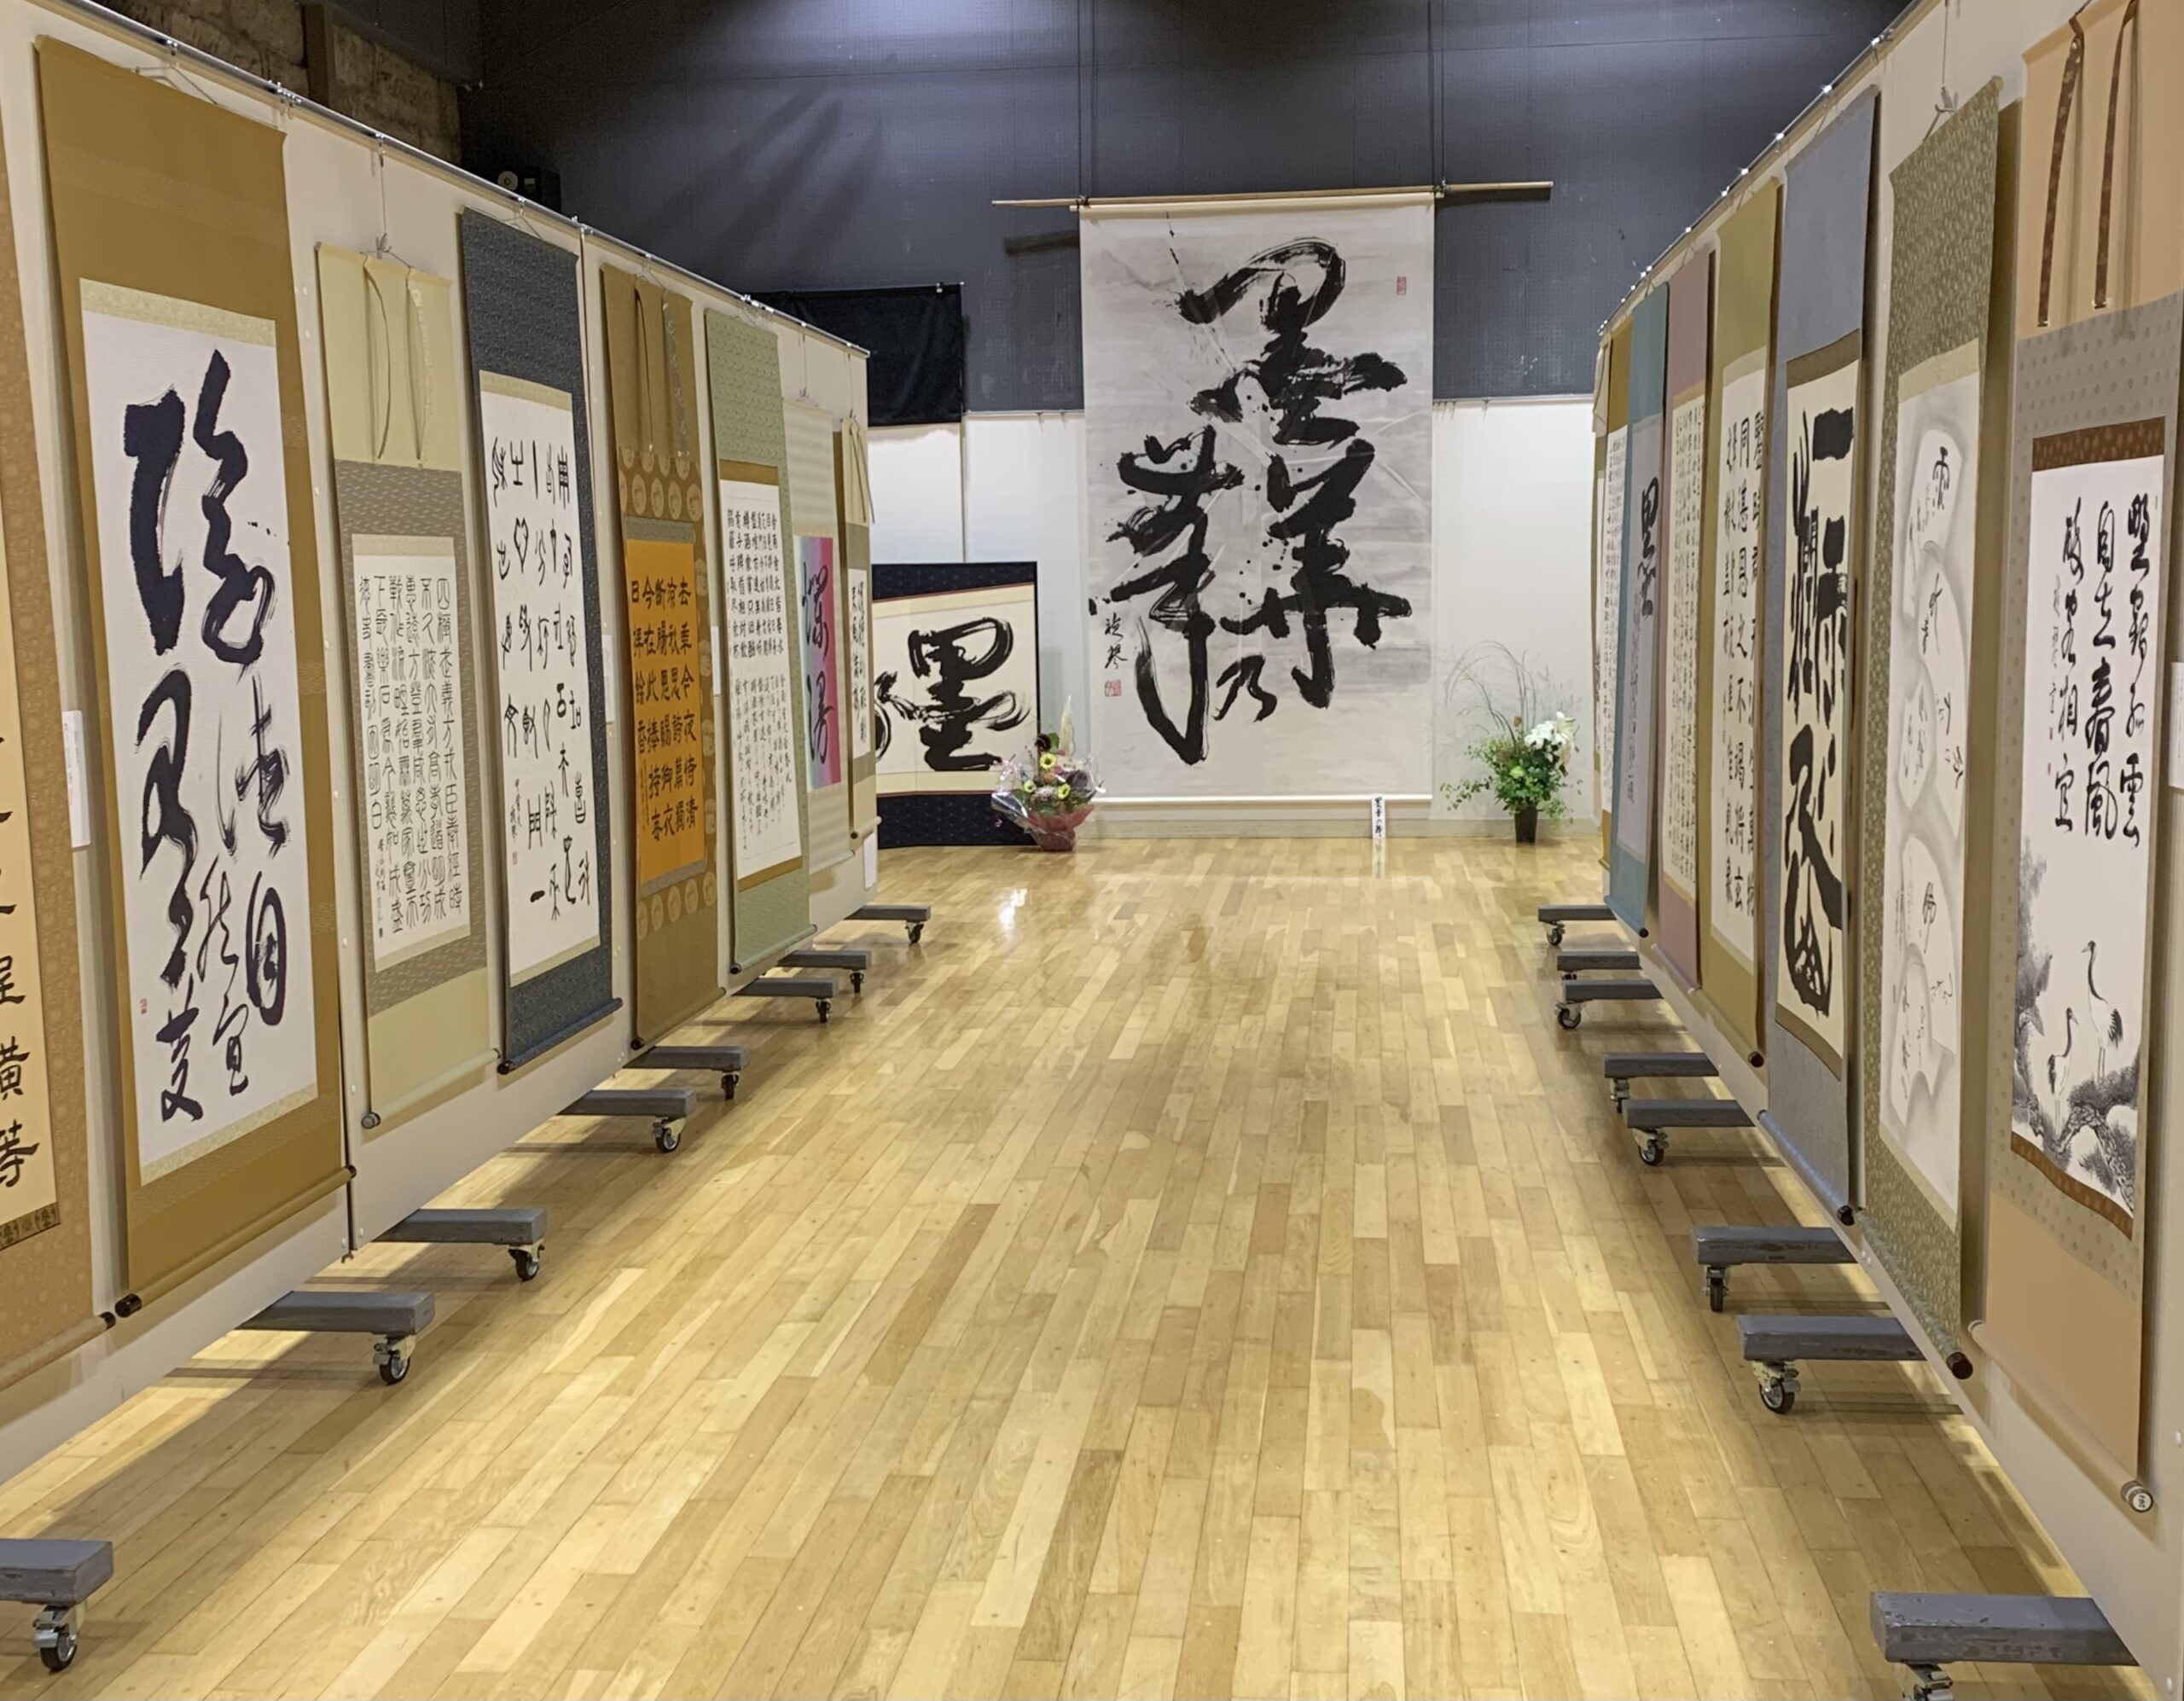 丹治禎琴さんが「書画展」を開催しました